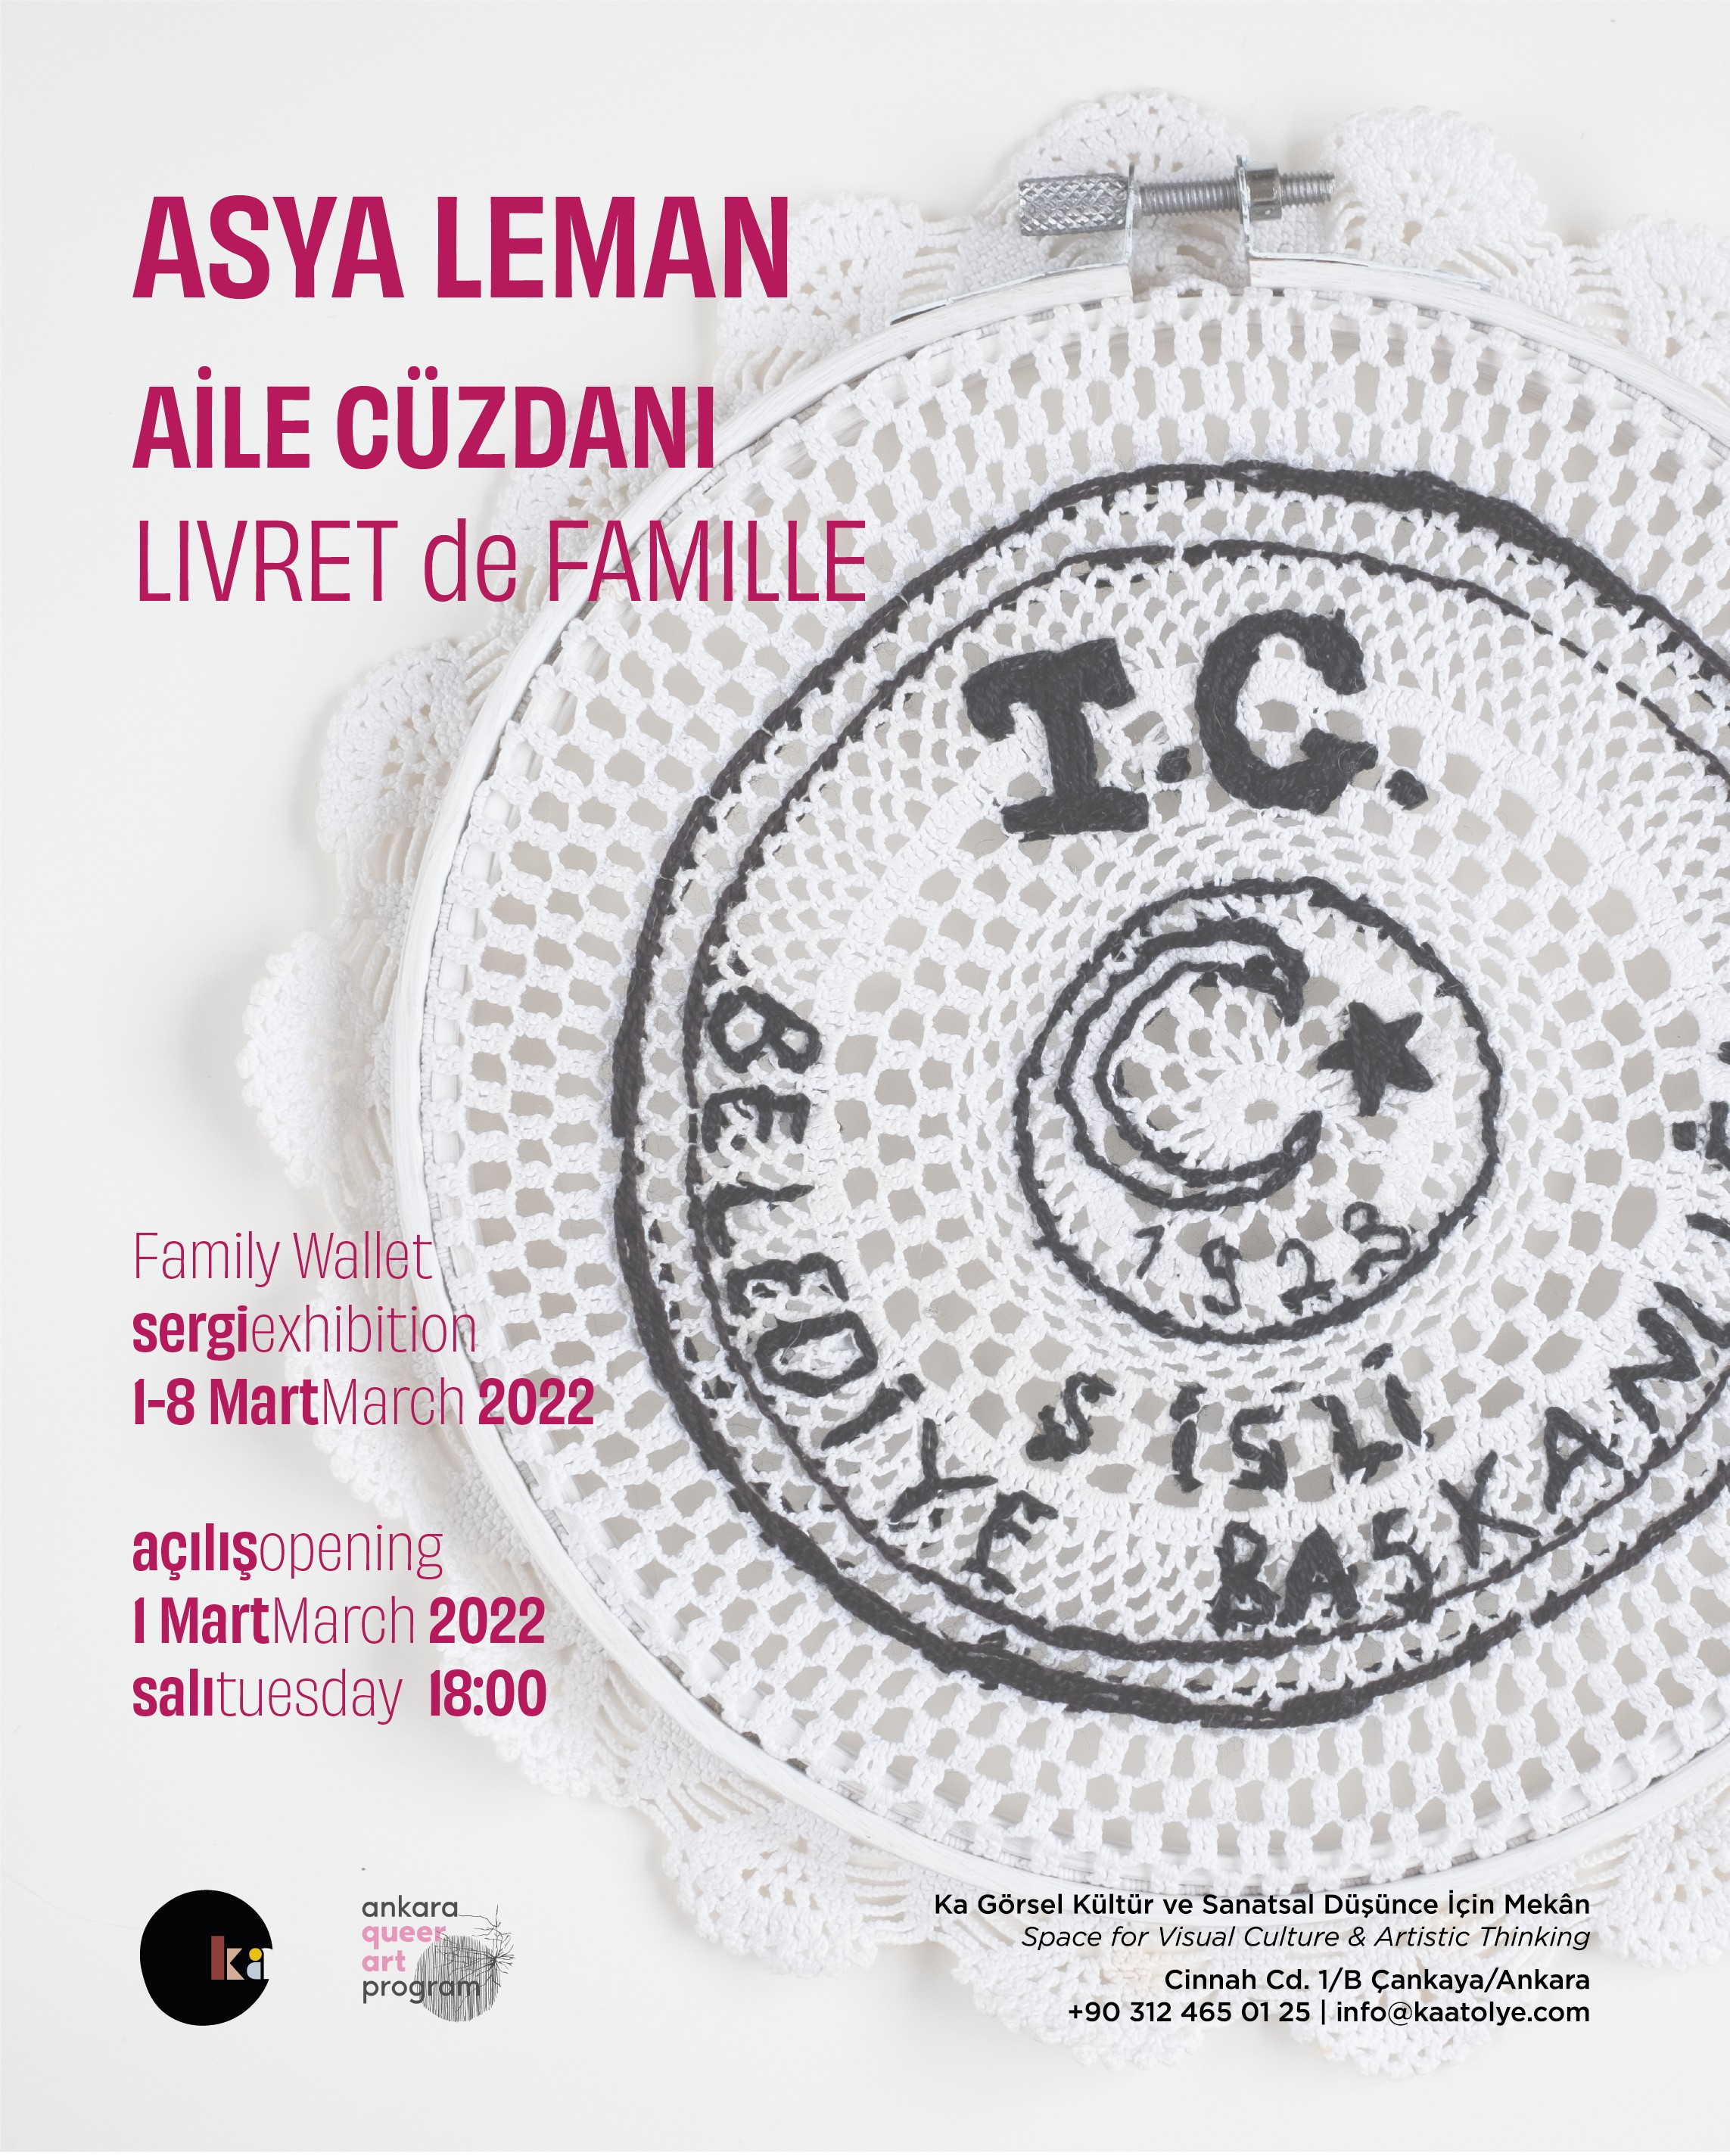 Ankara Queer Sanat’ın ikinci sergisi açılıyor: “Aile Cüzdanı - Livre de Famille” Kaos GL - LGBTİ+ Haber Portalı